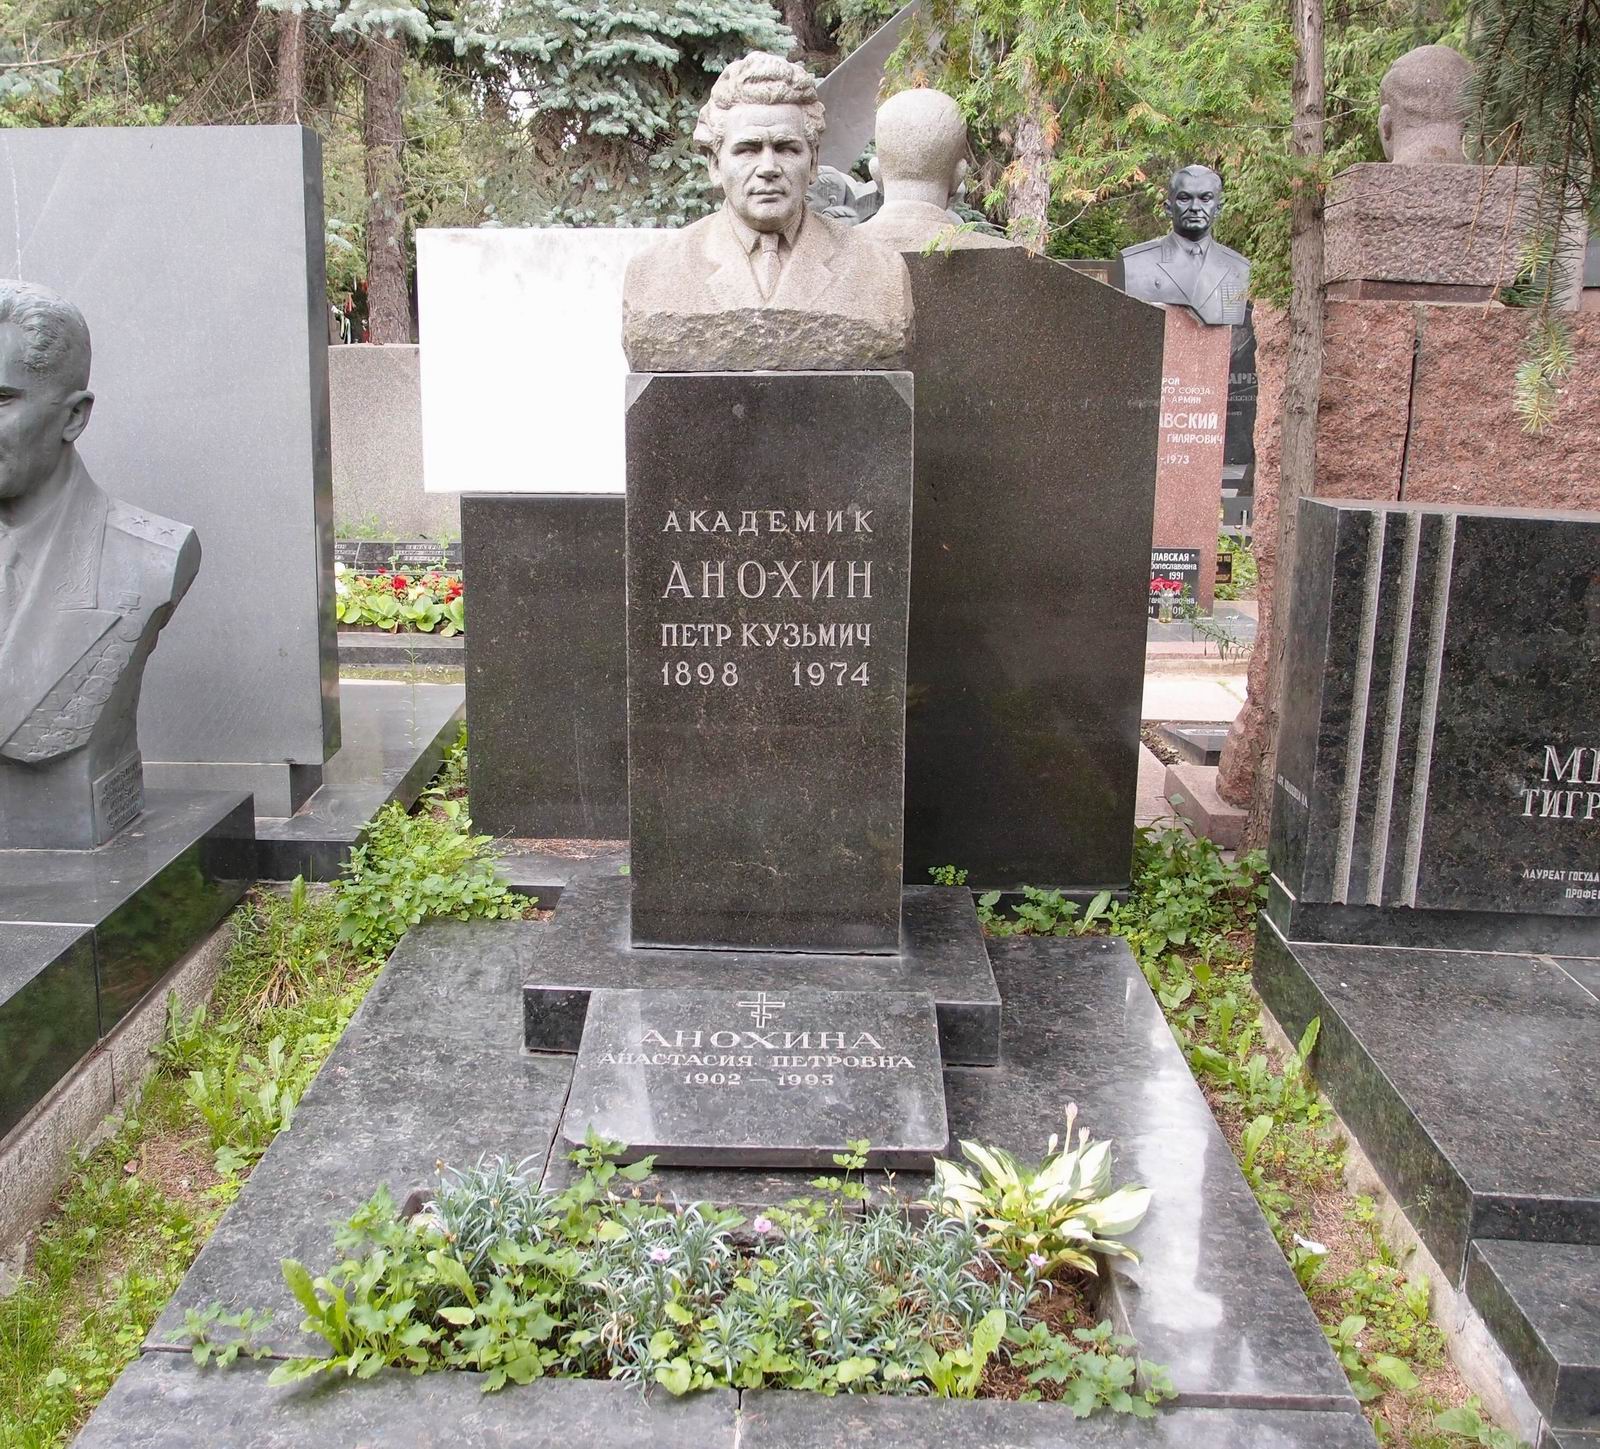 Памятник на могиле Анохина П.К. (1898-1974), на Новодевичьем кладбище (7-8-14).